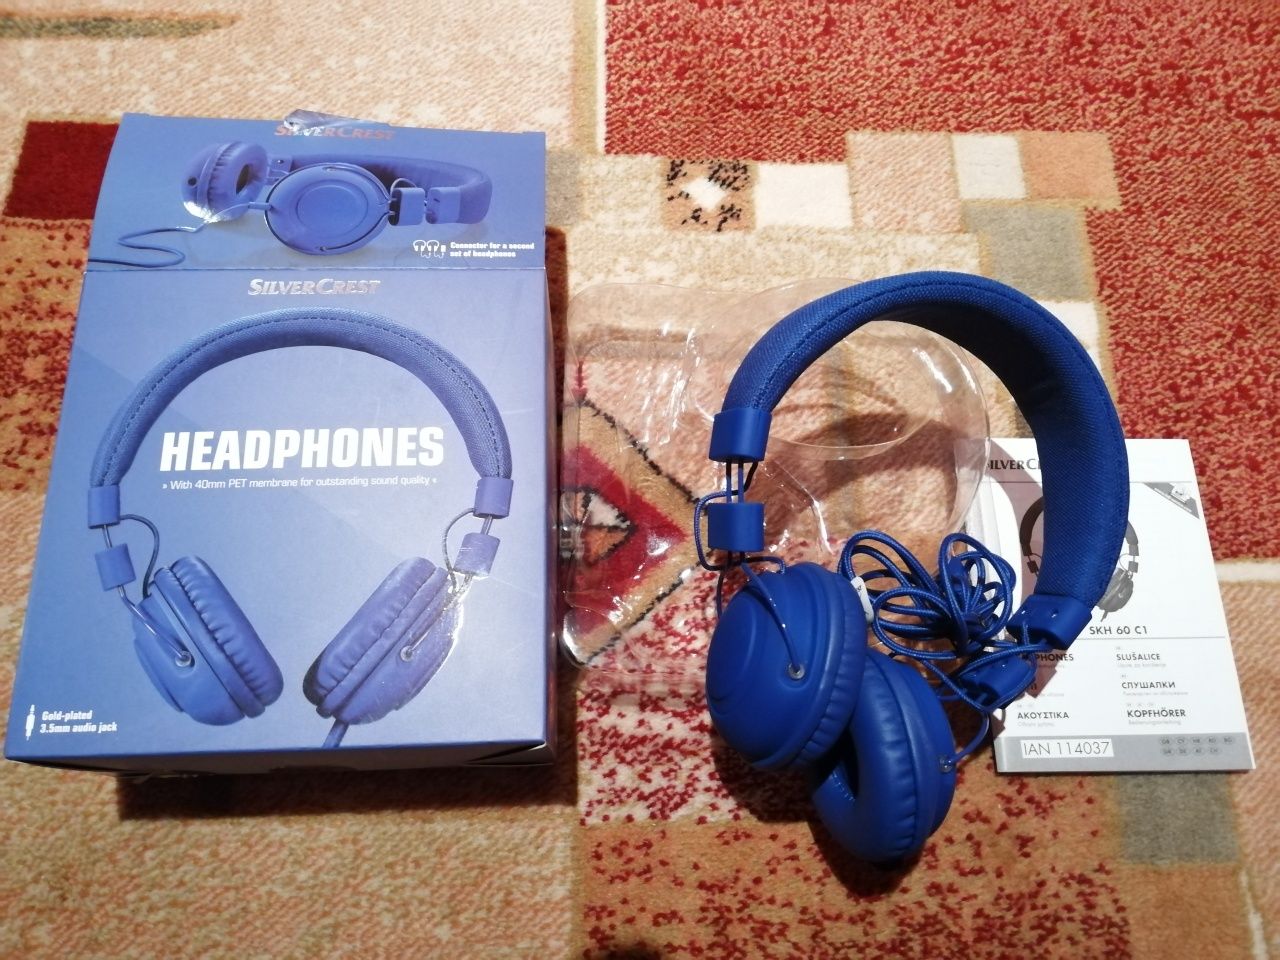 Нови слушалки Silvercrest skh 60 c1 - сини